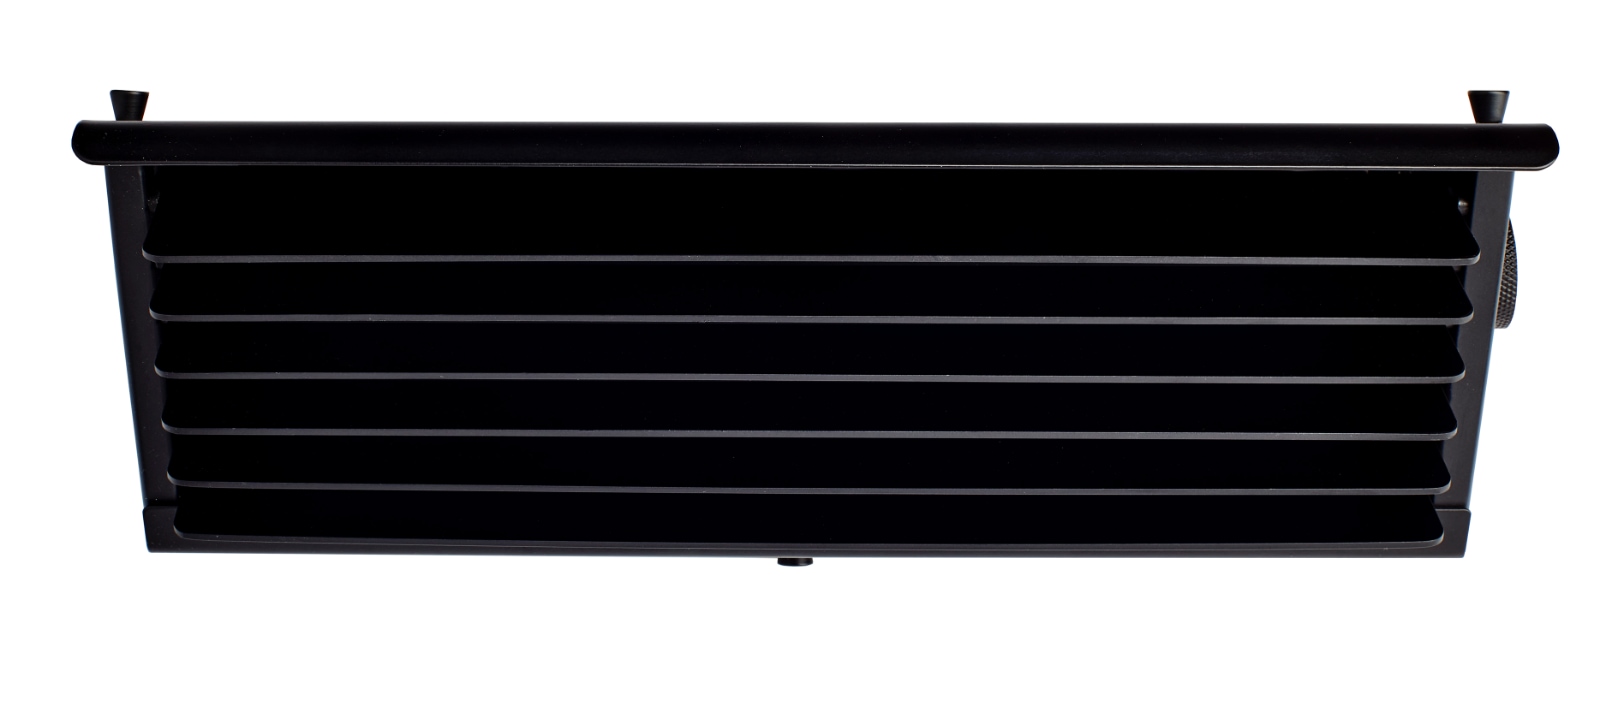 BINY BOX 2 Lamellen-Wandleuchte für gedämpftes Licht, schwarz, 27 cm: Das schwarze Modell ohne Kippschalter